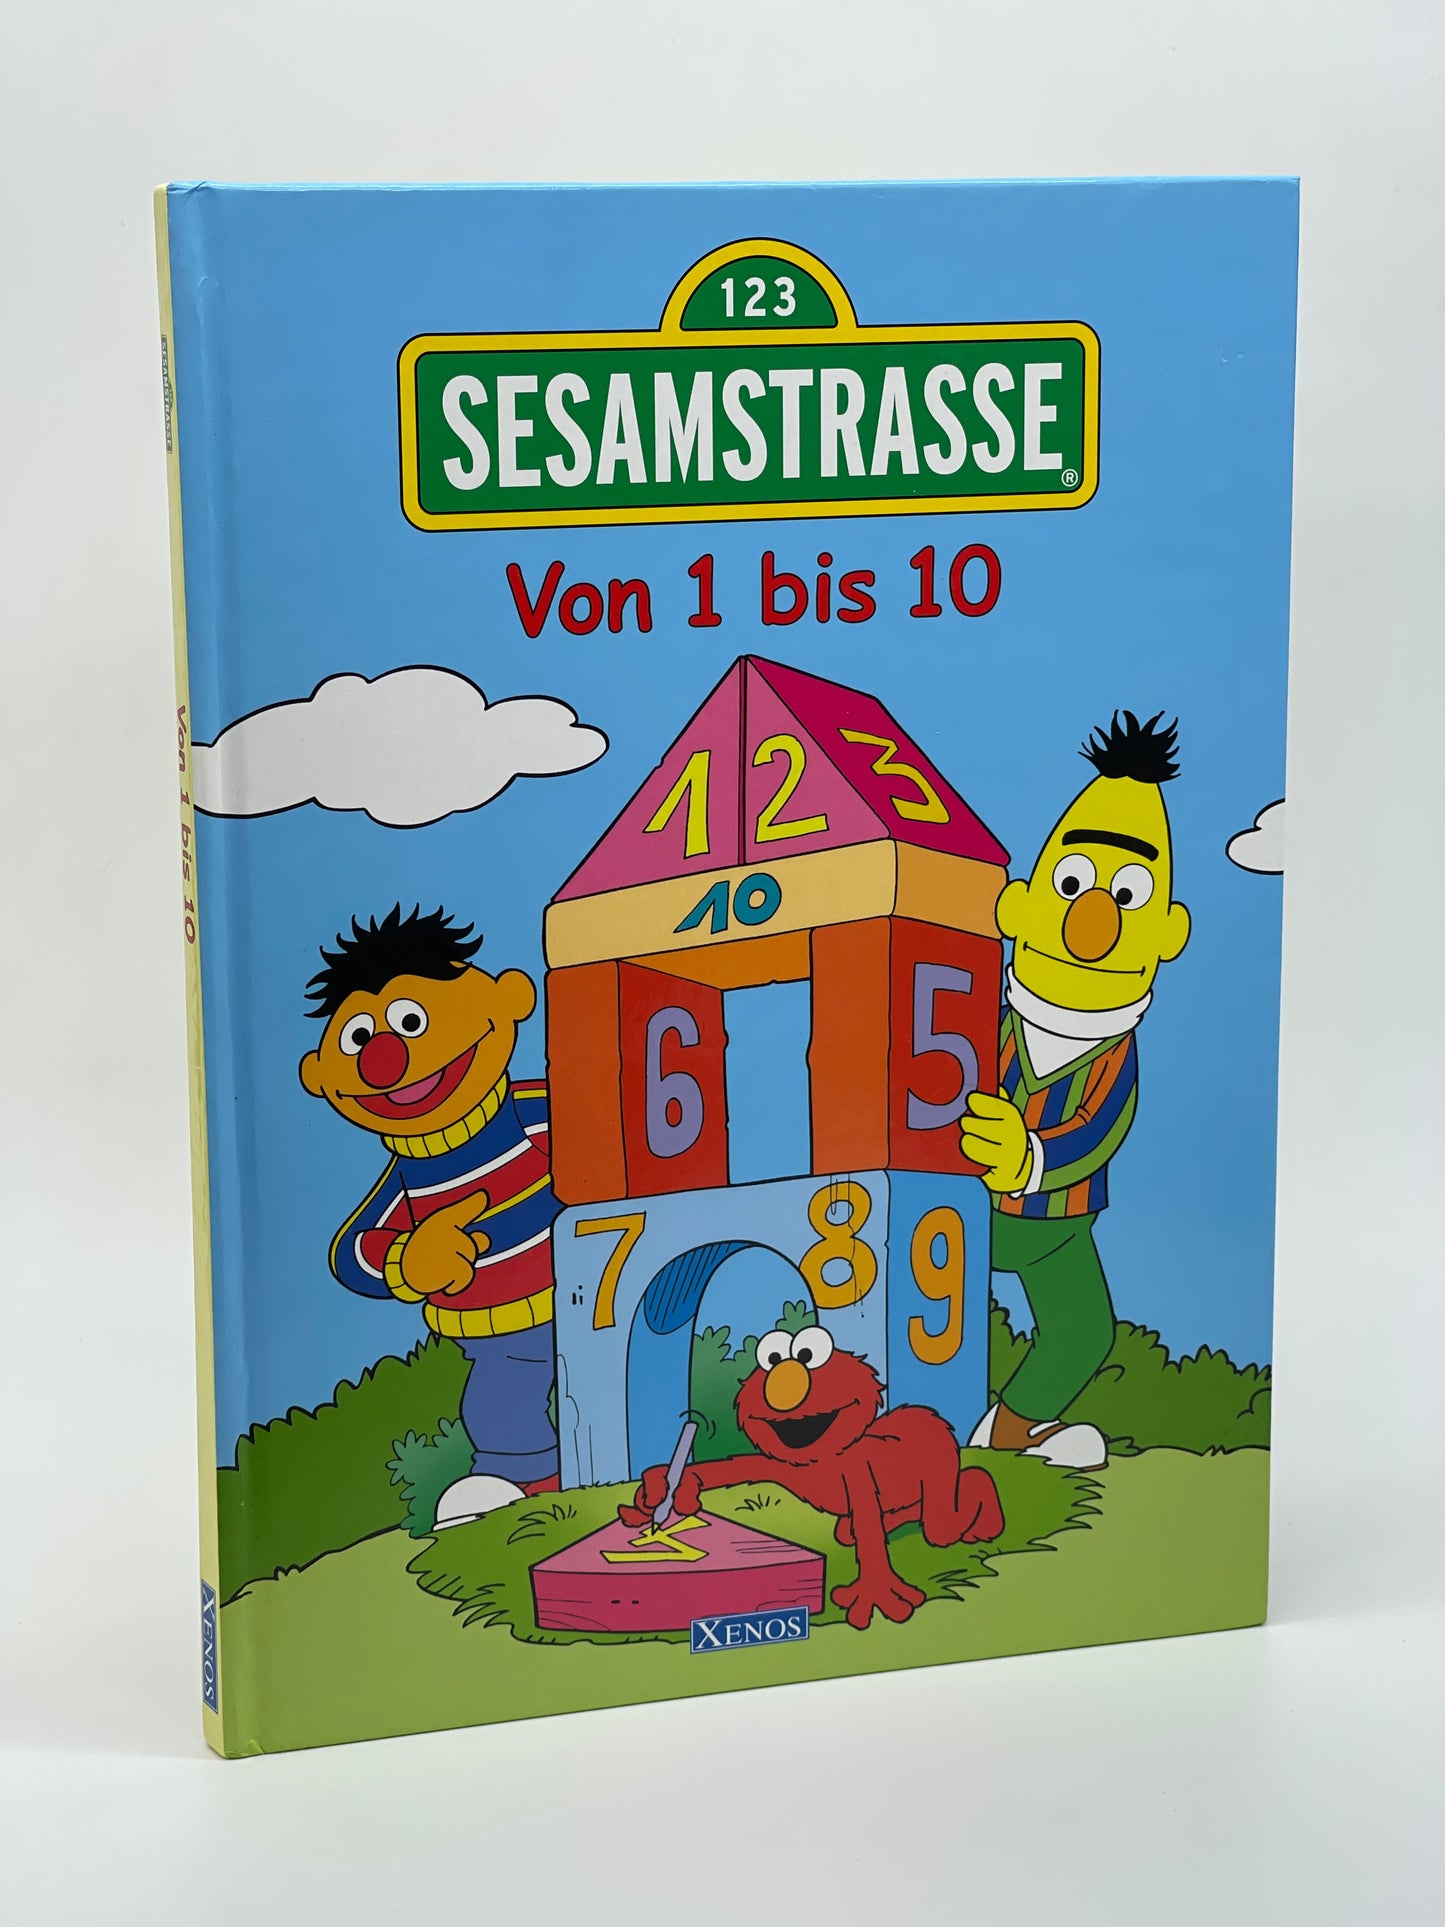 Sesamstraße Kinderbuch "Von 1 bis 10" Xenos Verlag (2003)